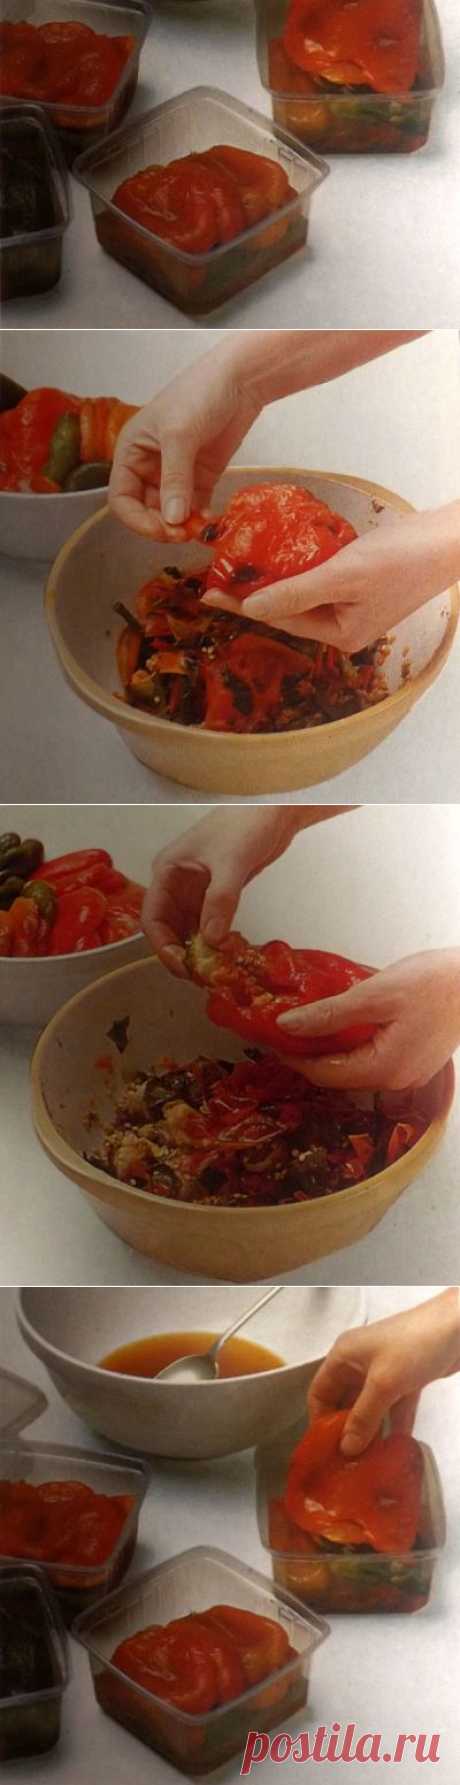 Как приготовить обжаренный сладкий перец замороженный в собственном соку. Фото-рецепт. | Хозяева дома.